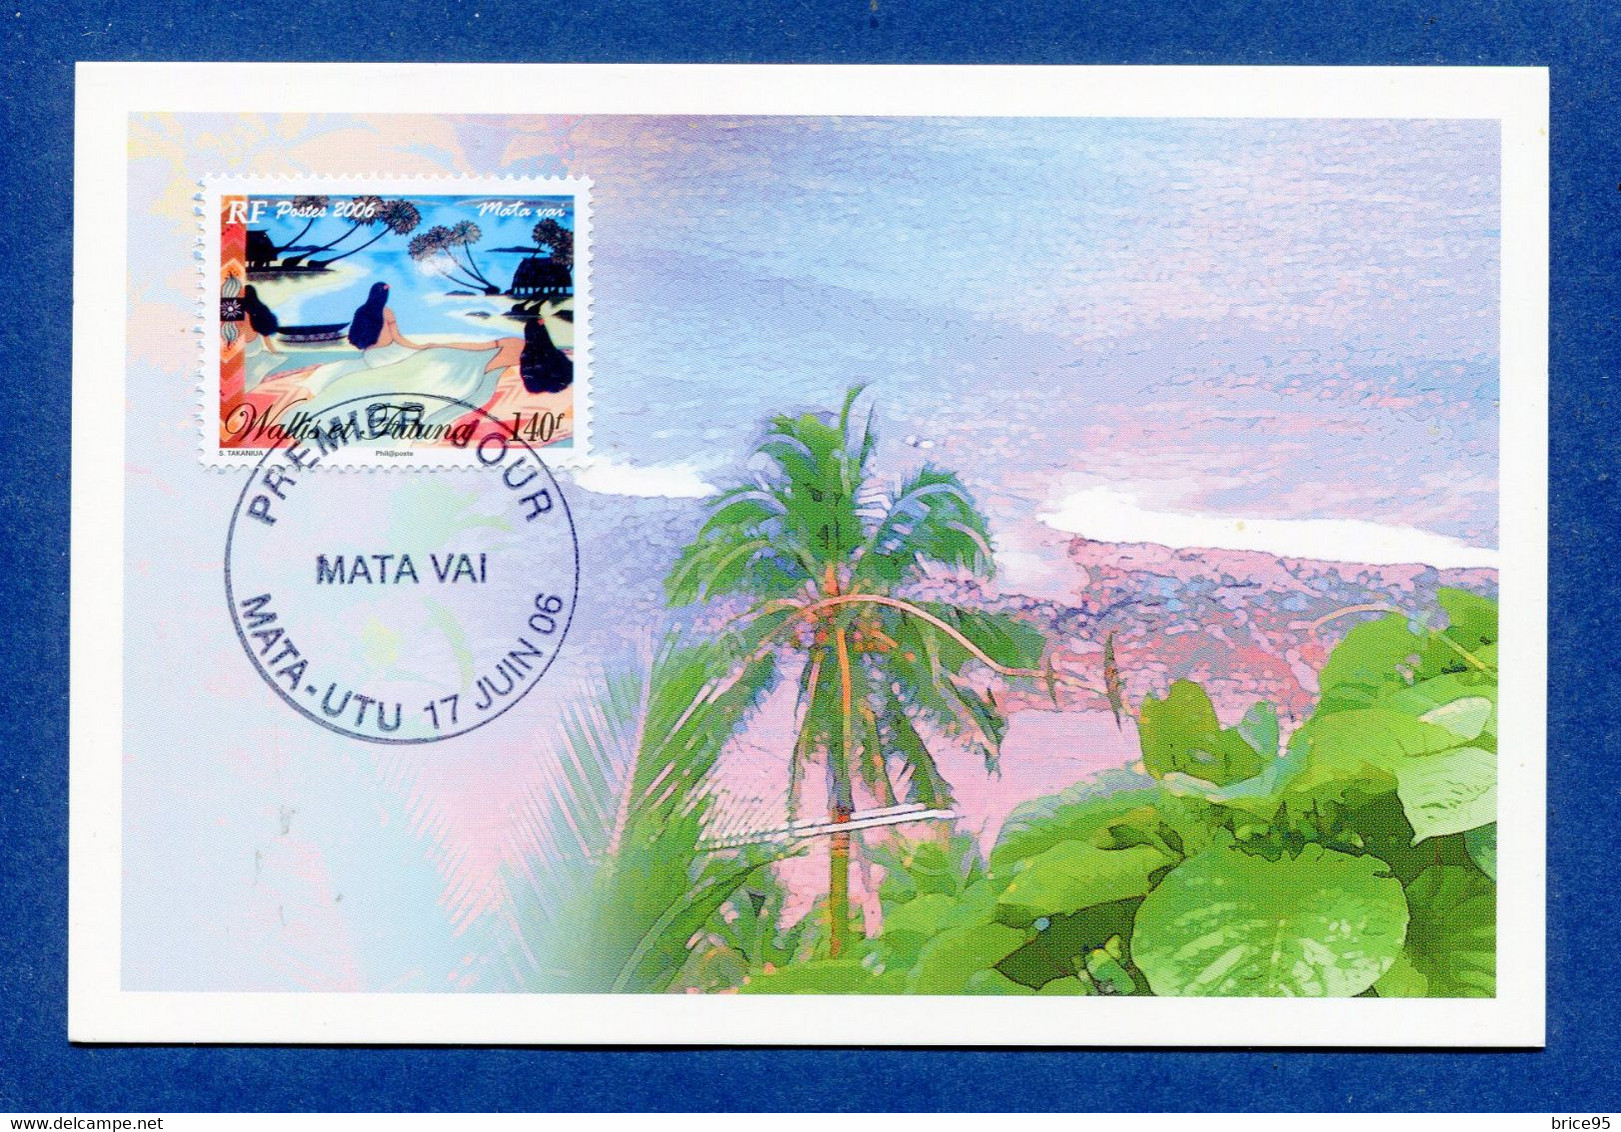 ⭐ Wallis Et Futuna - Carte Maximum - Premier Jour - FDC - Haka Mai - 2006 ⭐ - Cartoline Maximum